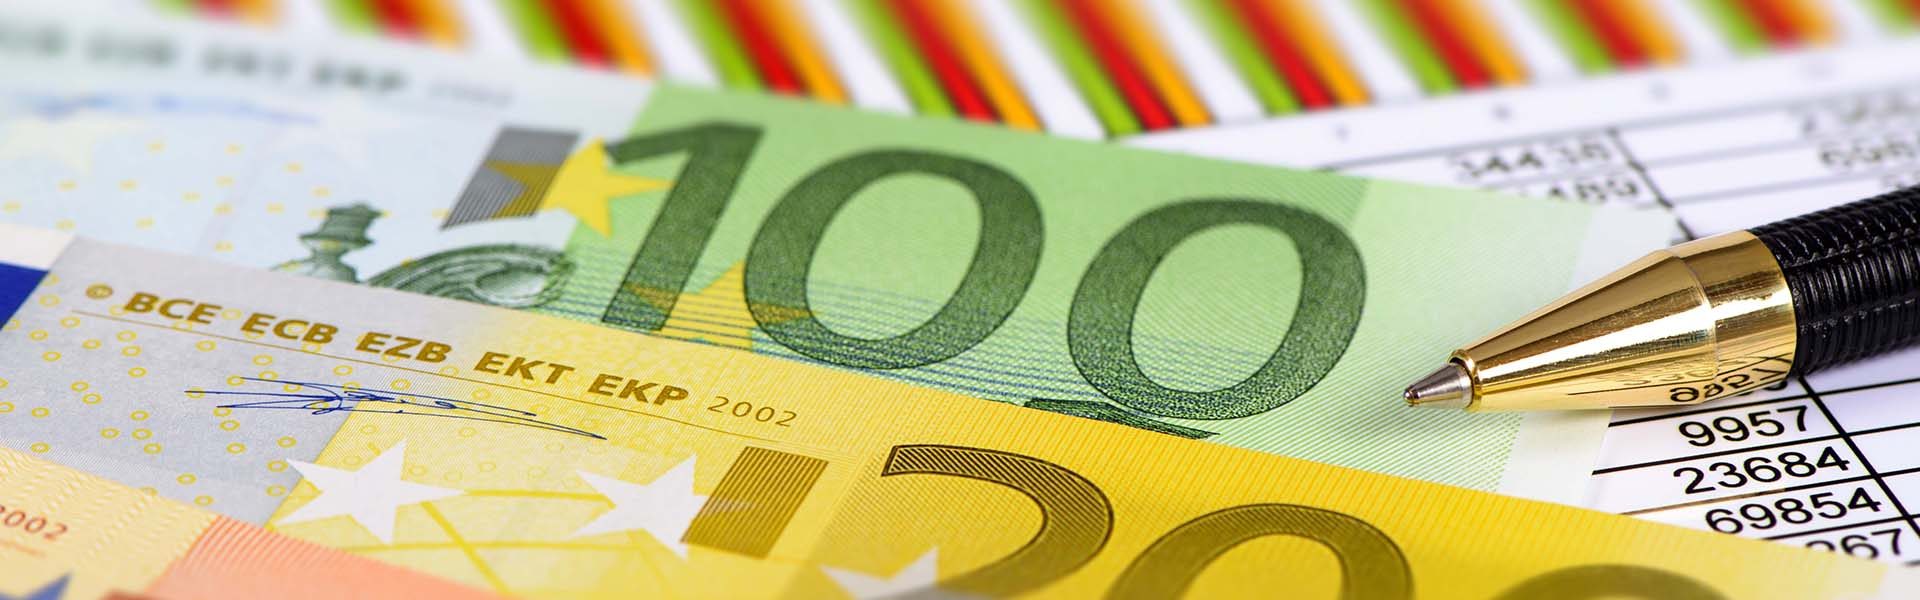  Trotz Zinswende: Hohe Inflation sorgt für 395 Milliarden Euro Kaufkraftverlust beim Geldvermögen